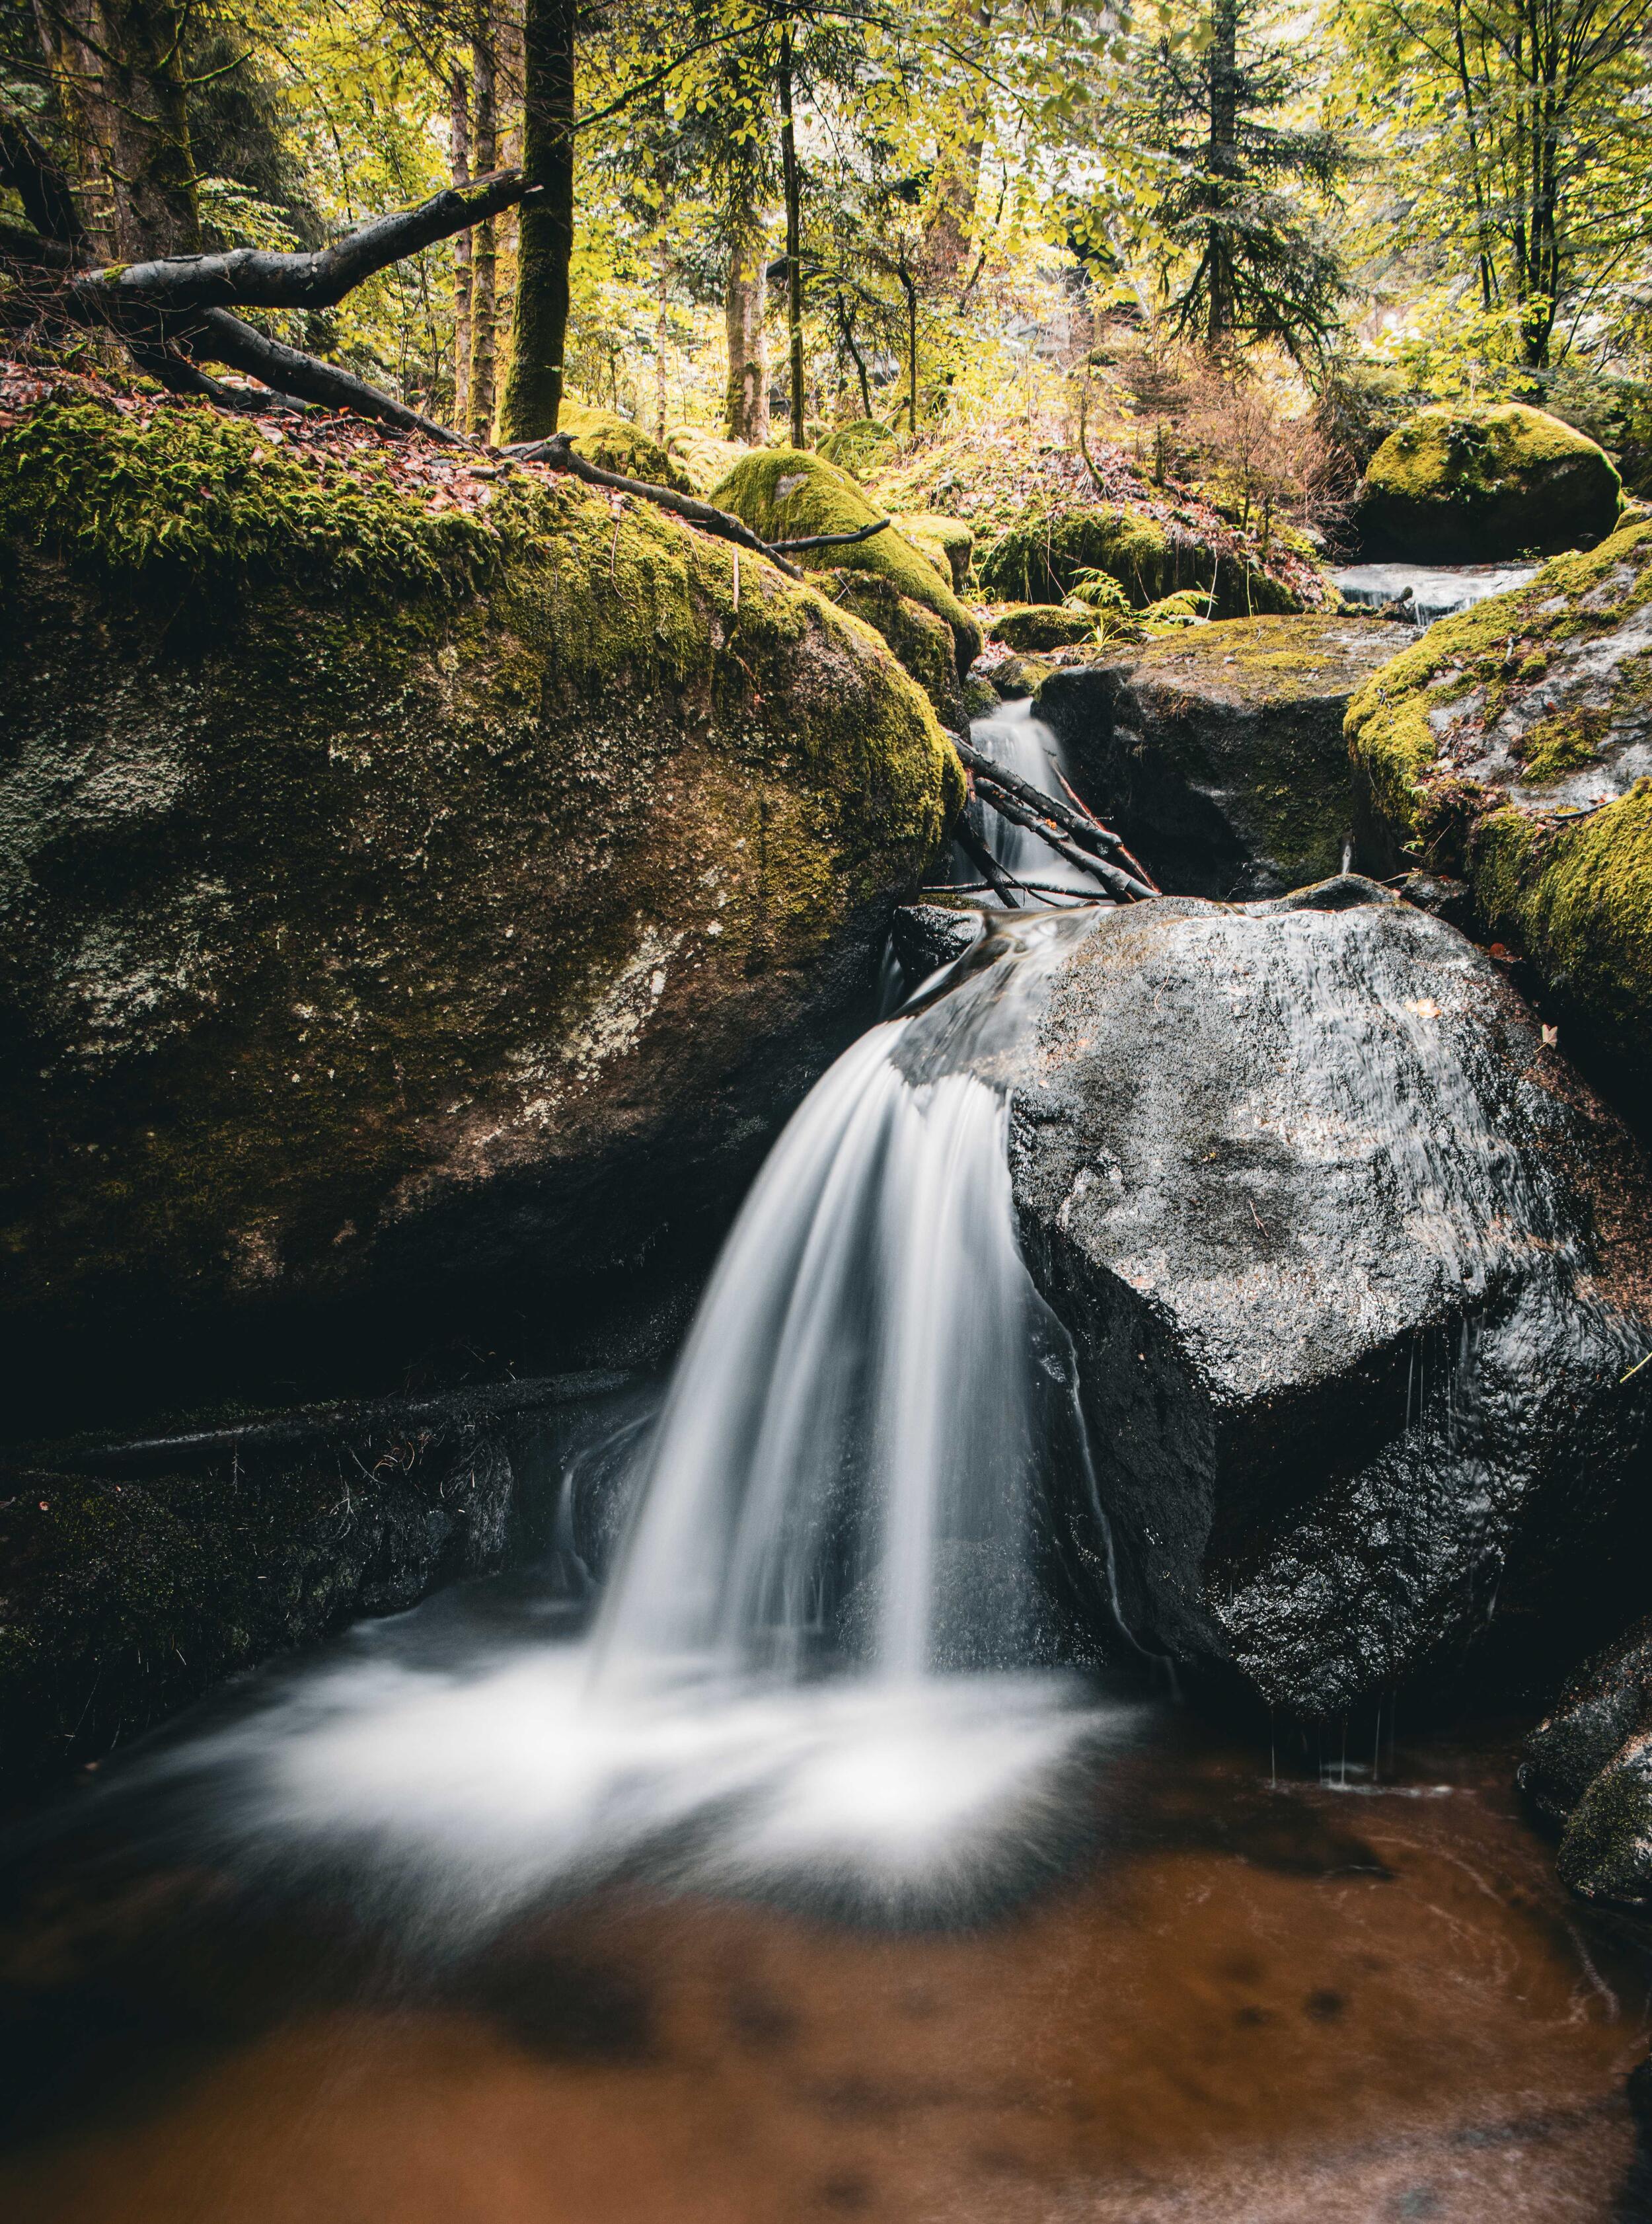 Ein Bachlauf mit kleinem Wasserfall im Wald.